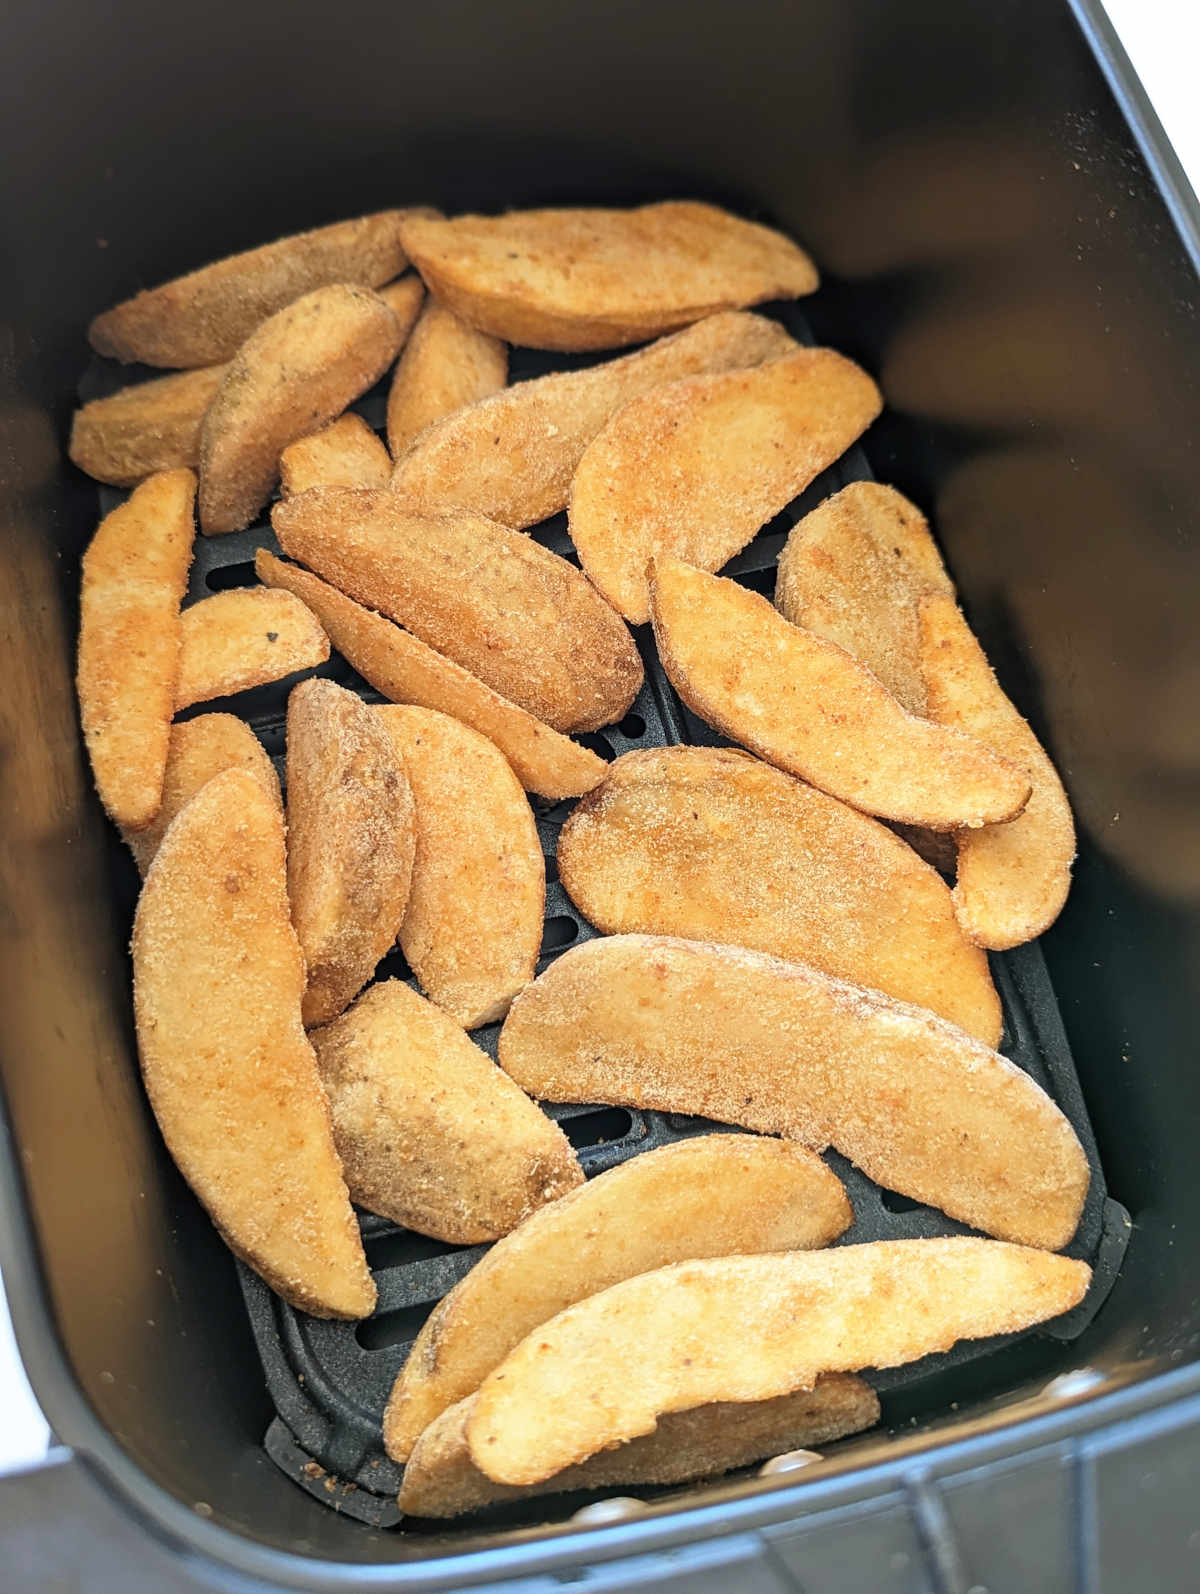 Frozen potato wedges in an air fryer basket.